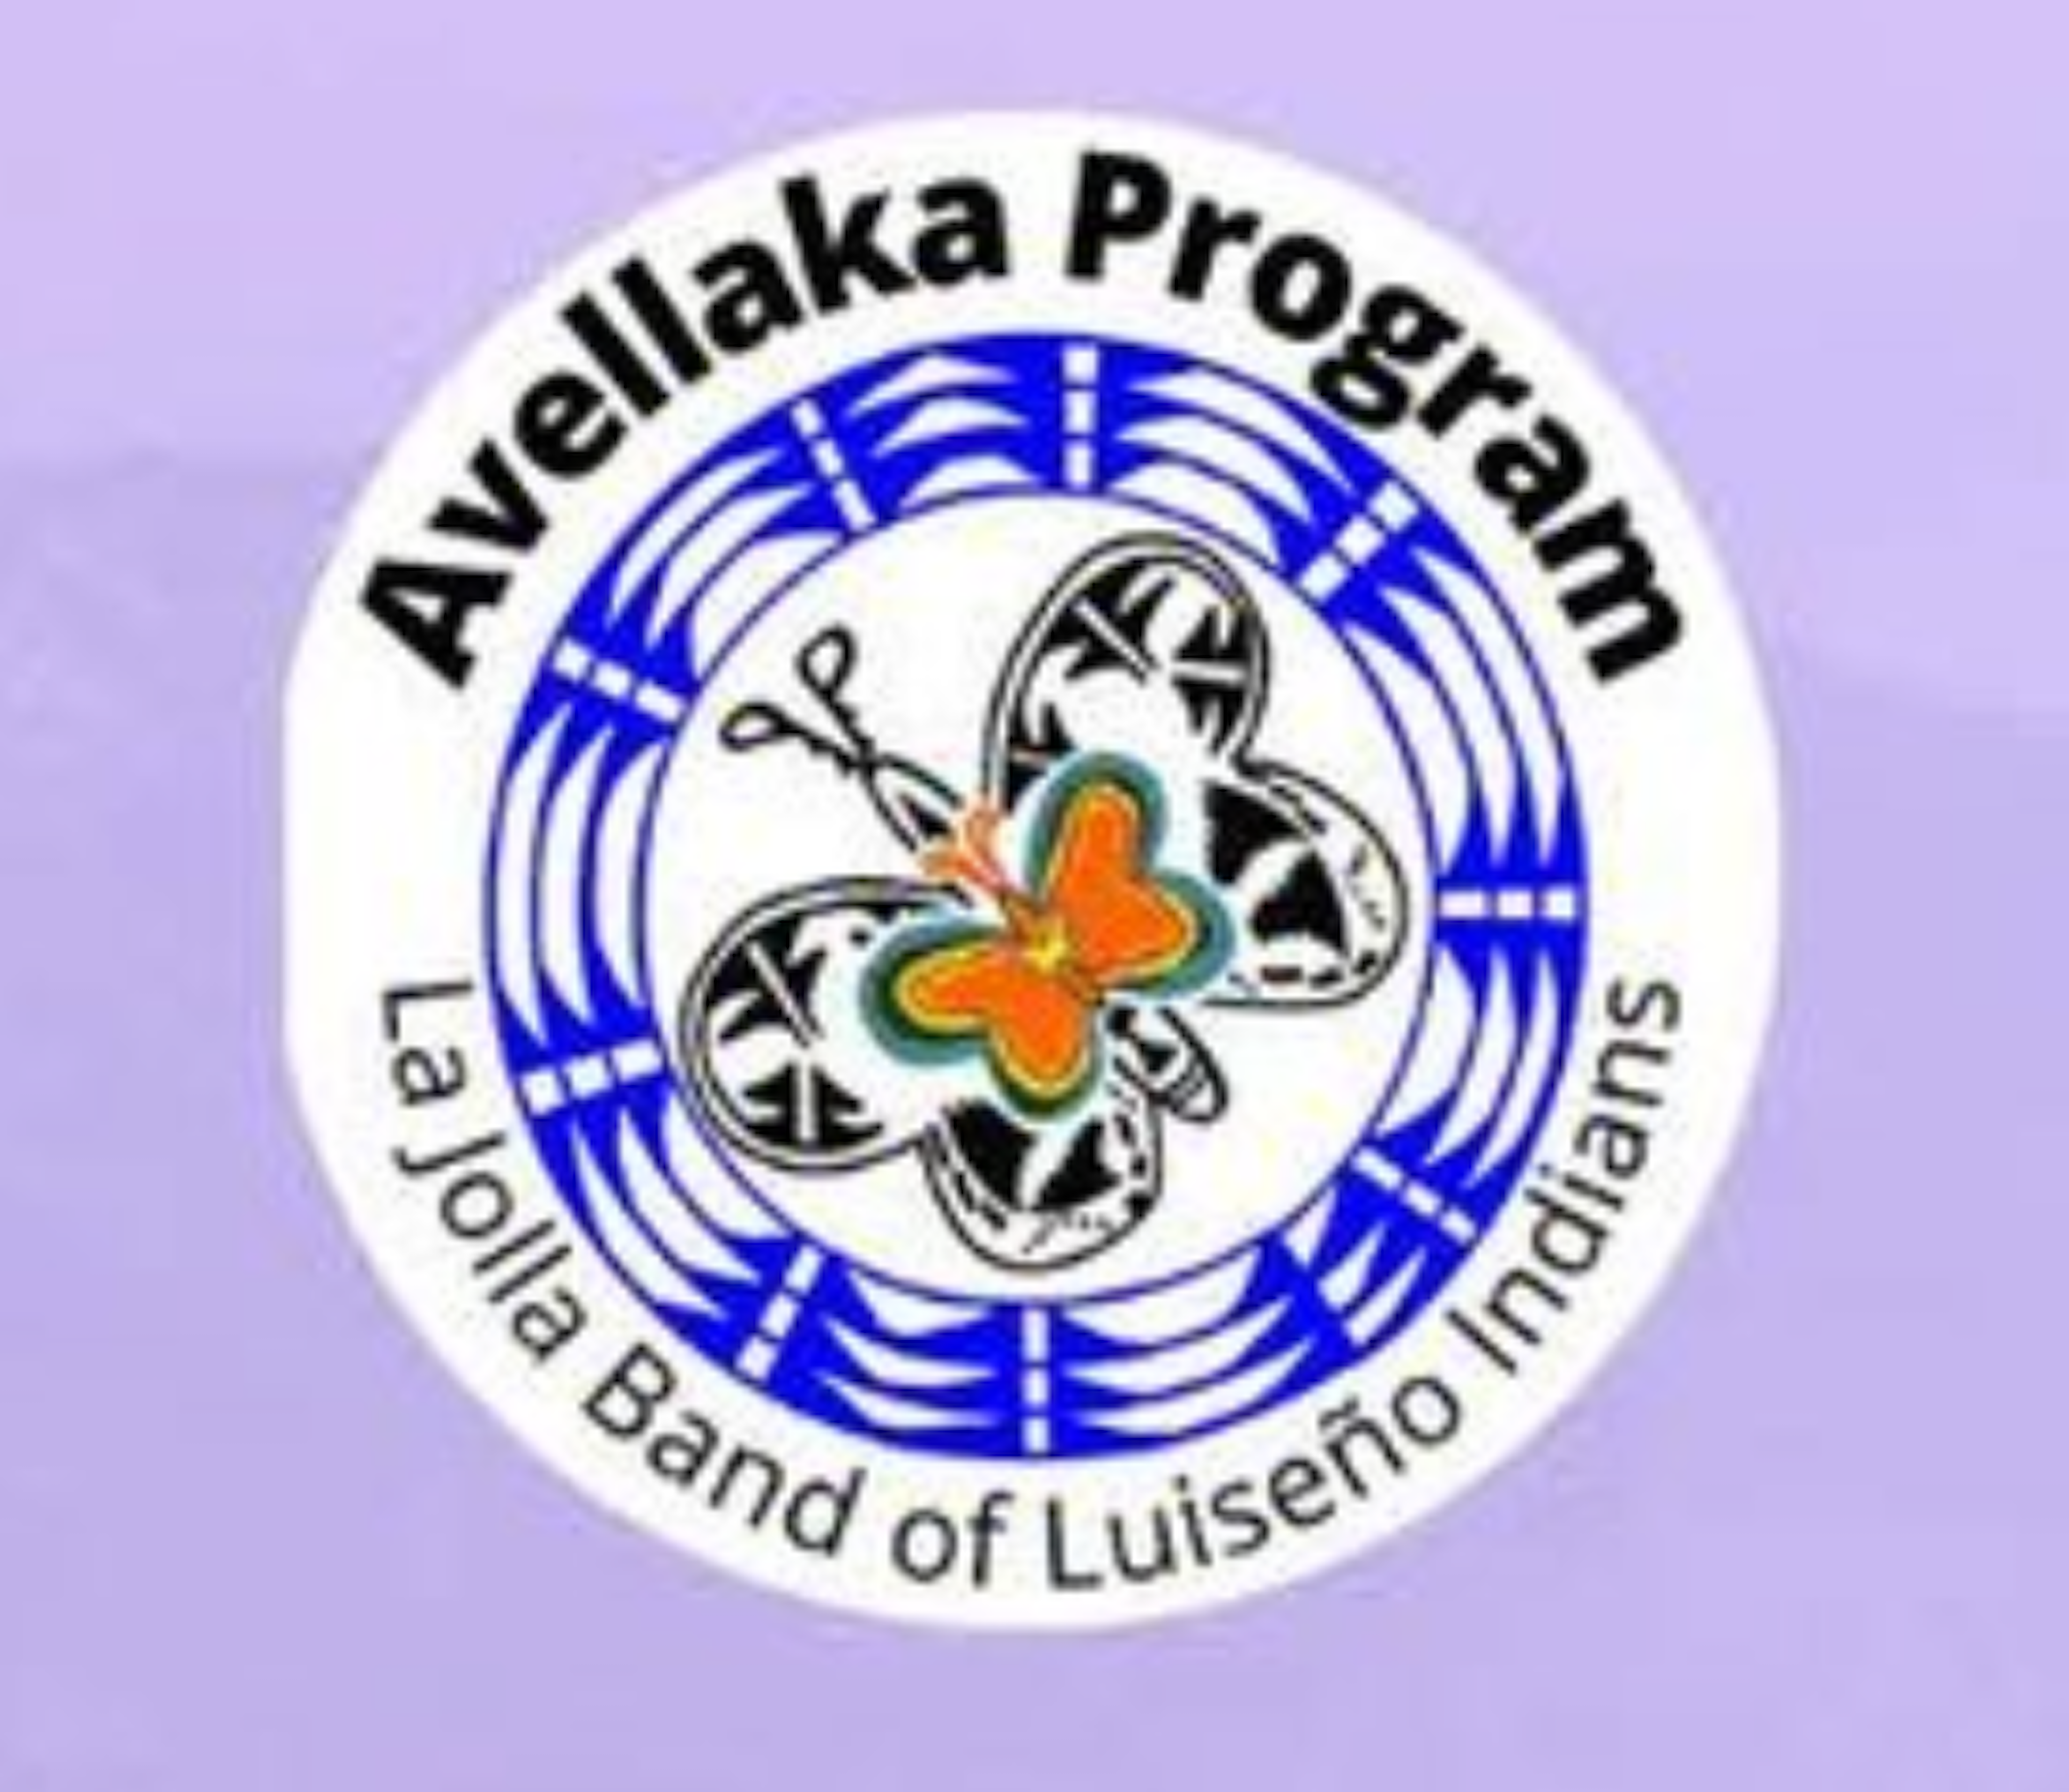 Avellaka logo 2023